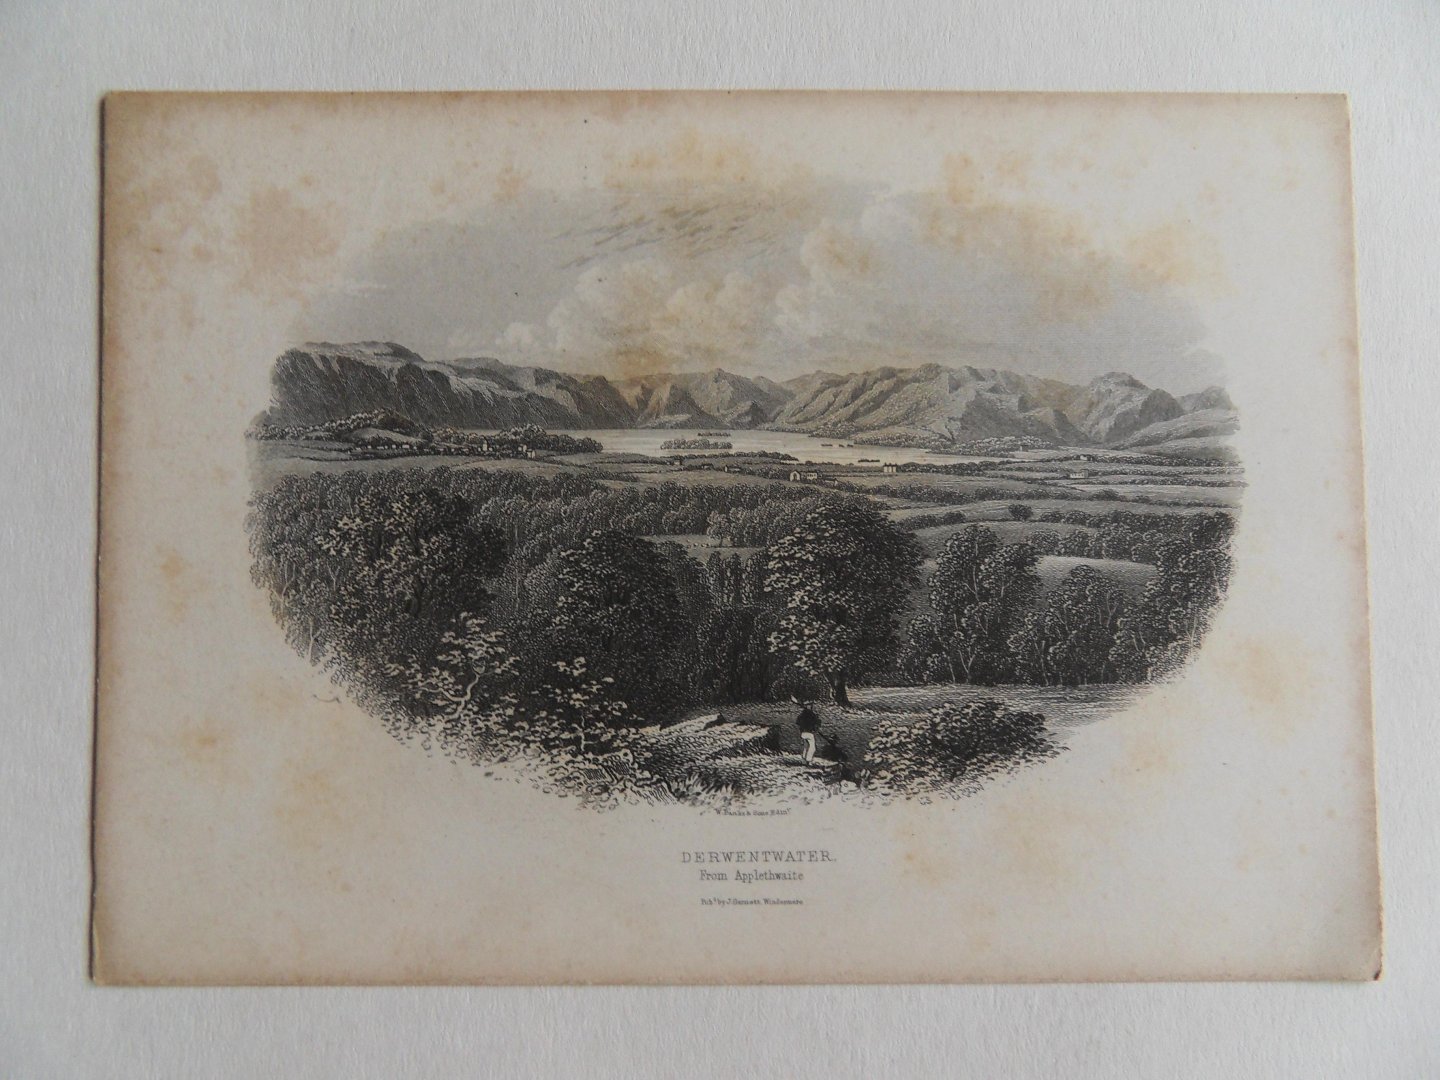 Garnett, J. - Garnett`s Views of the English Lakes. - Keswick District. [ Omslag met 11 losse gravures ].